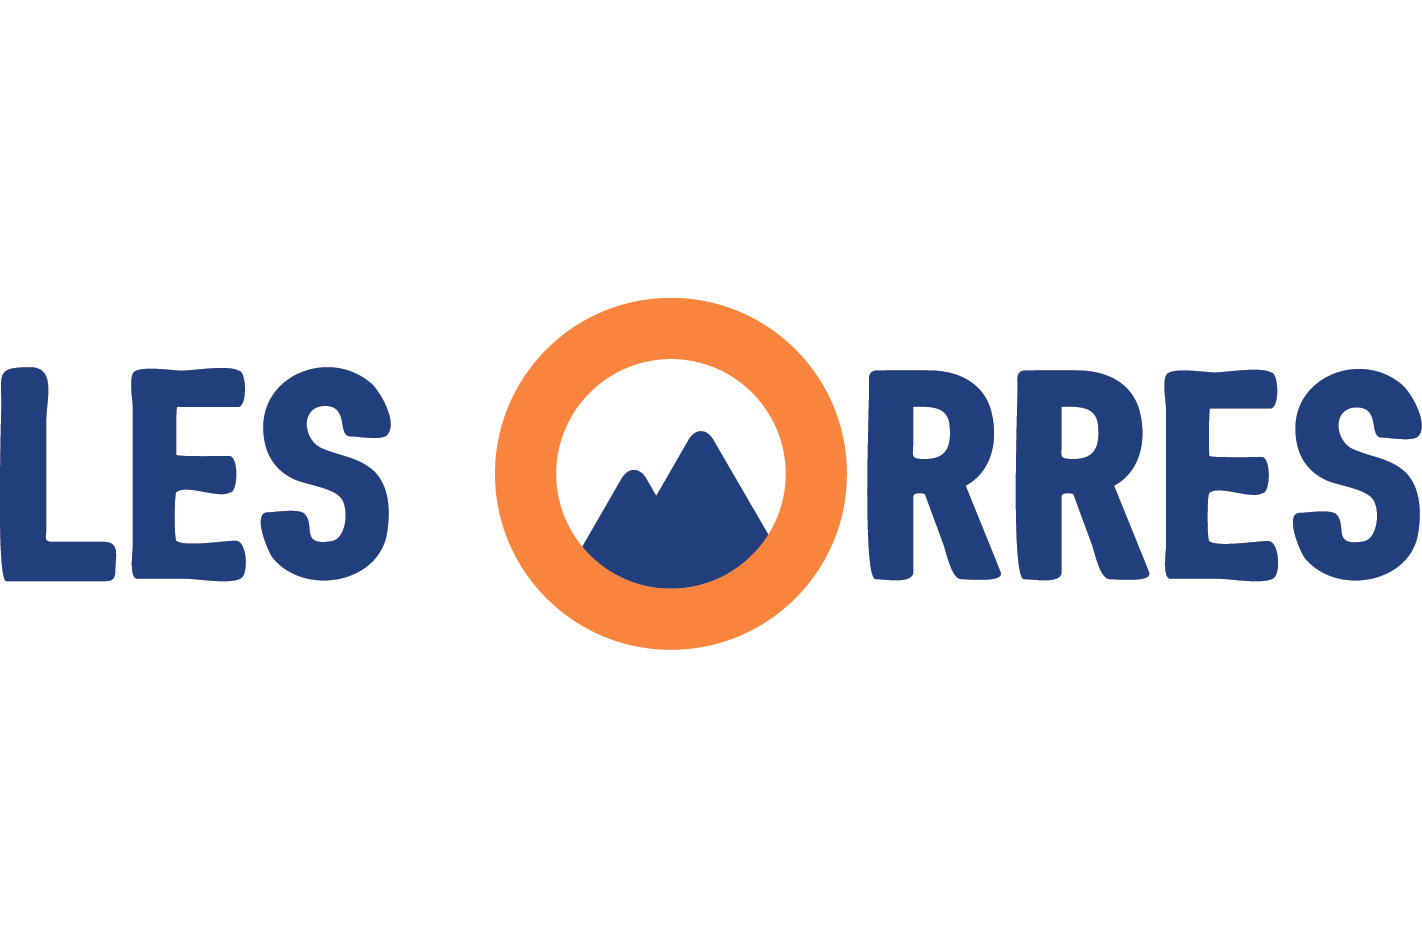 Ski resort Les Orres